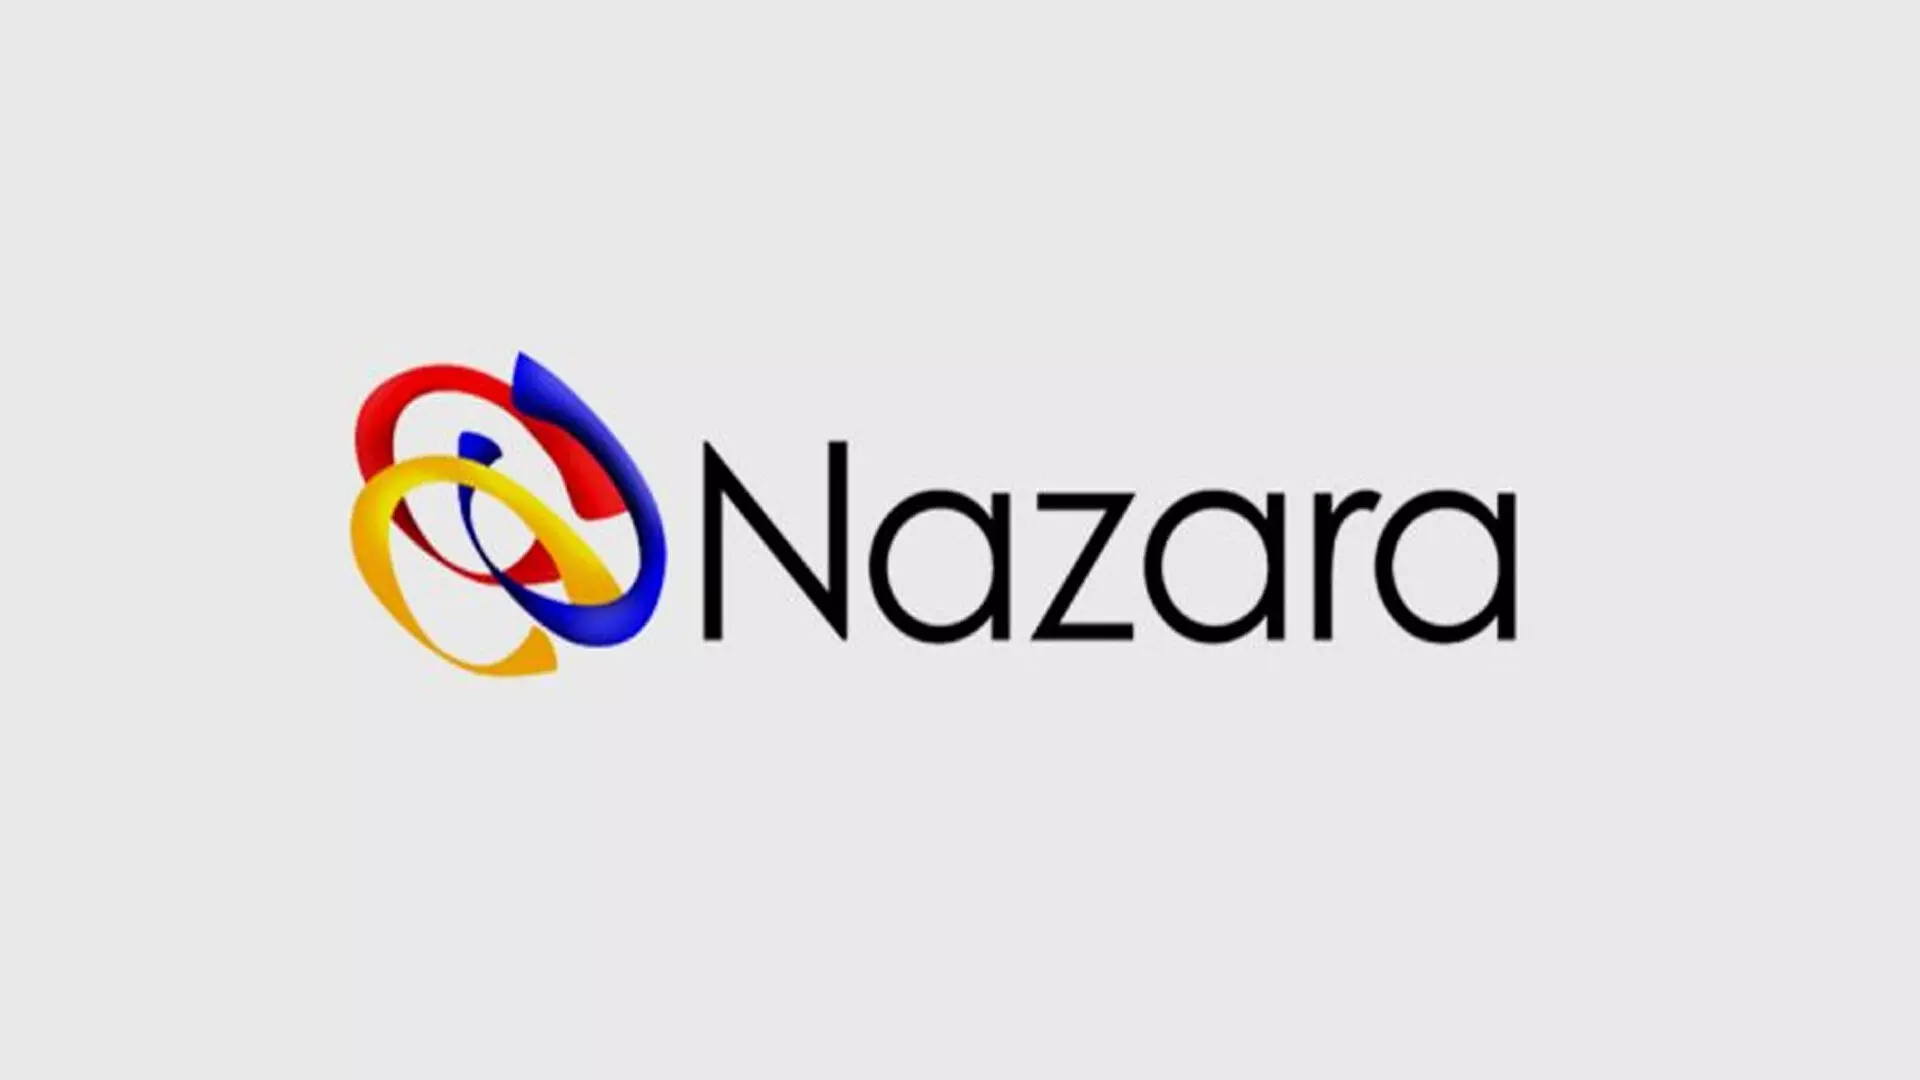 Nazara ने पेपर बोट एप्स का पूर्ण अधिग्रहण कर लिया